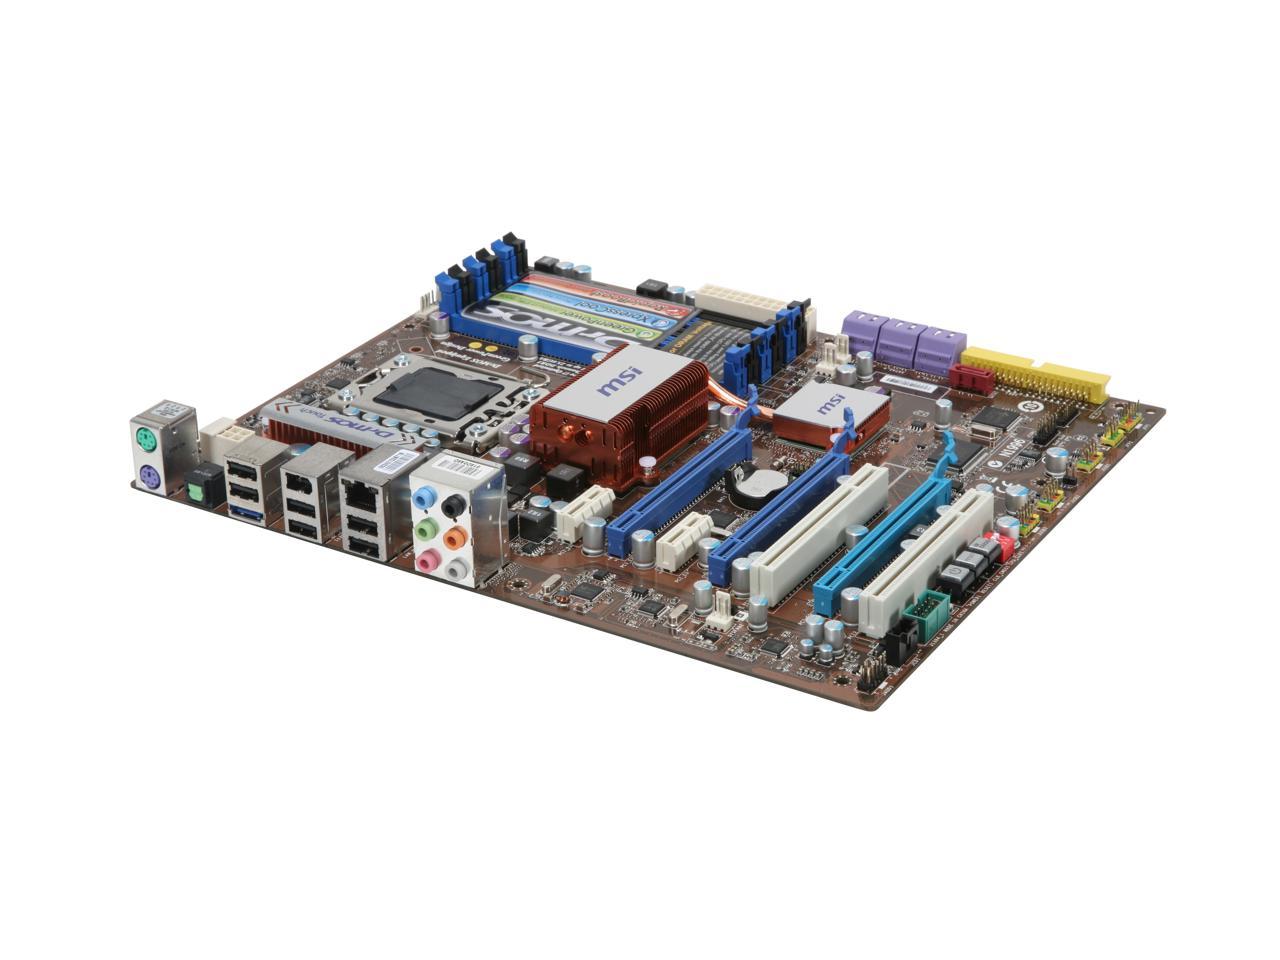 PARTS-QUICK Brand 4GB Memory Upgrade for MSI Motherboard X58 Pro SLI DDR3 PC3-10600 Non-ECC DIMM RAM